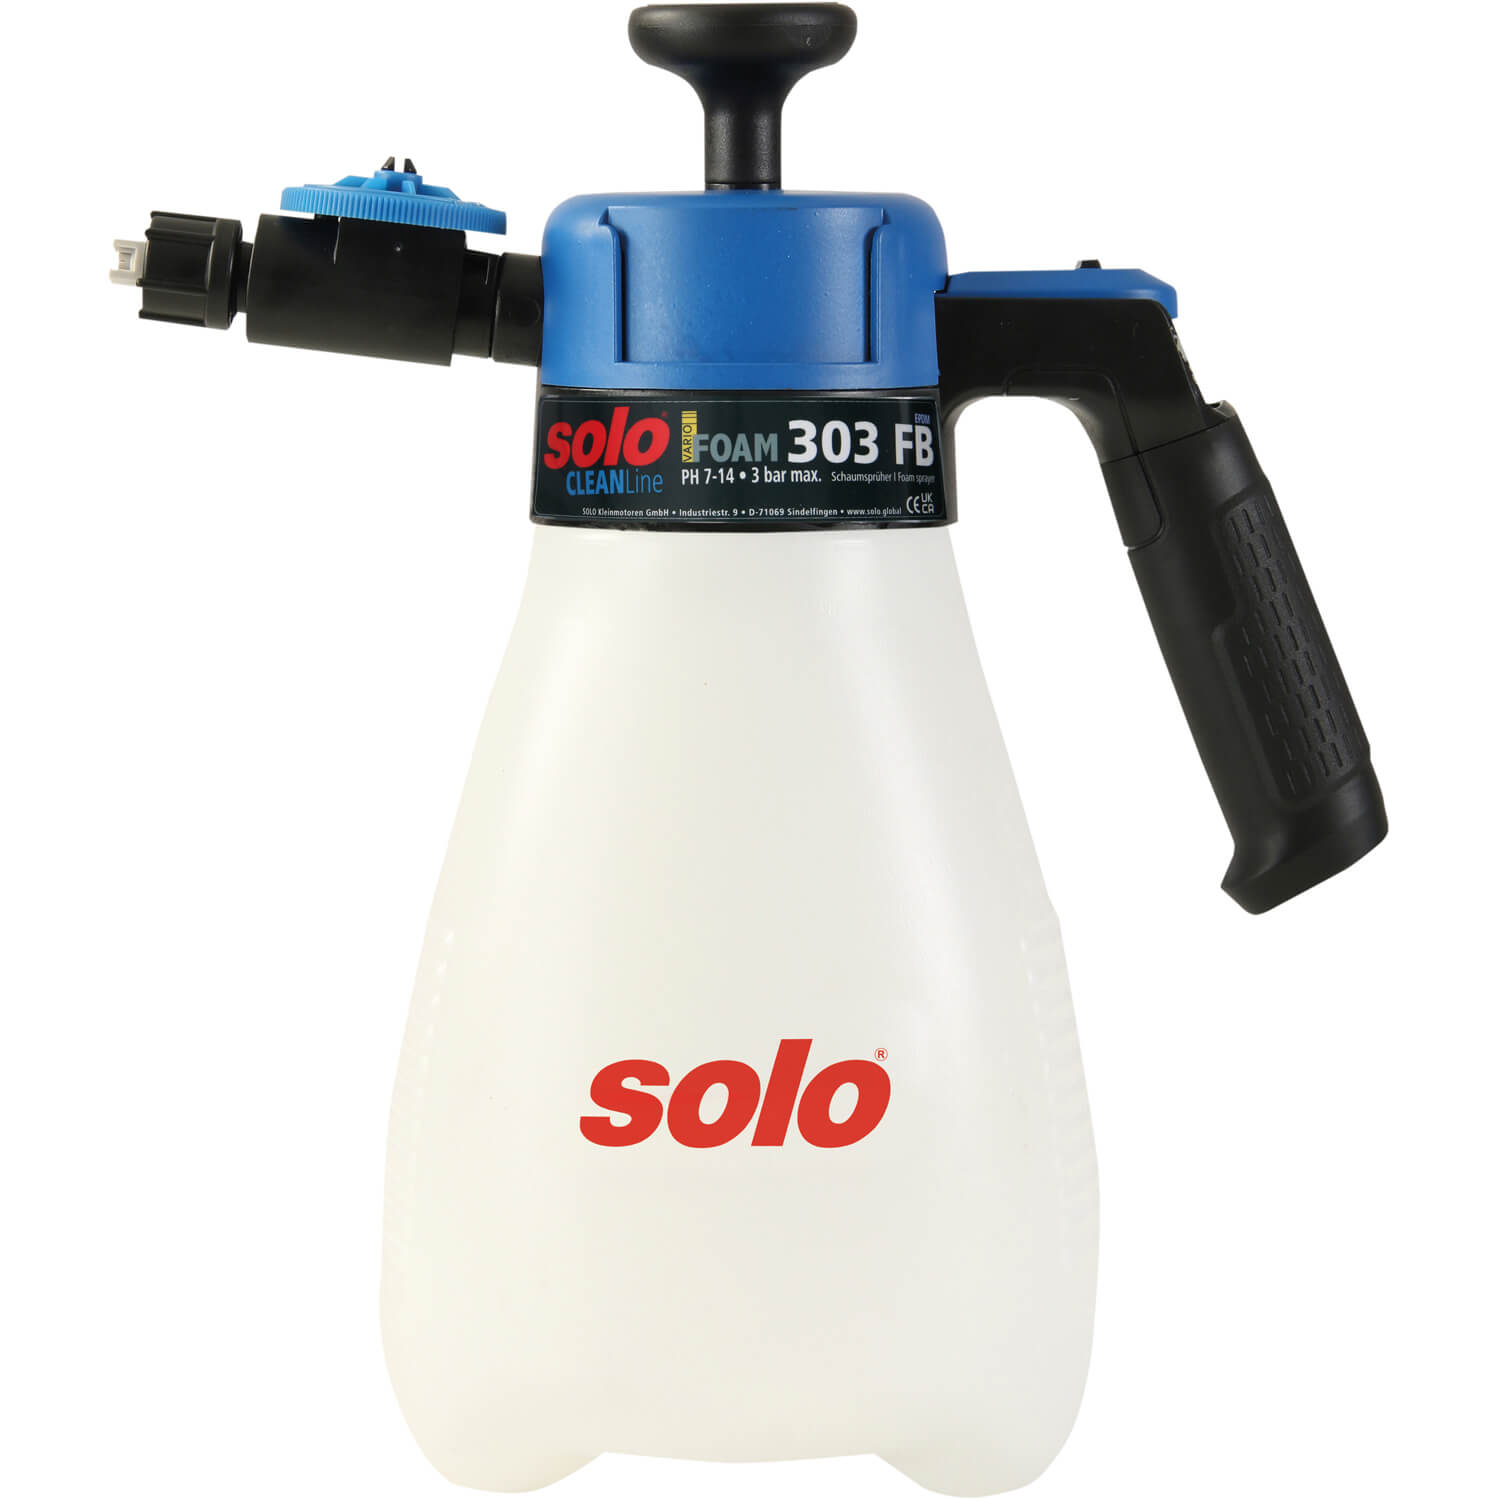 Обприскувач ручний SOLO, 1.25 л, поршневий, тиск 3 бар, вага 0.45 кг | solo 303FB